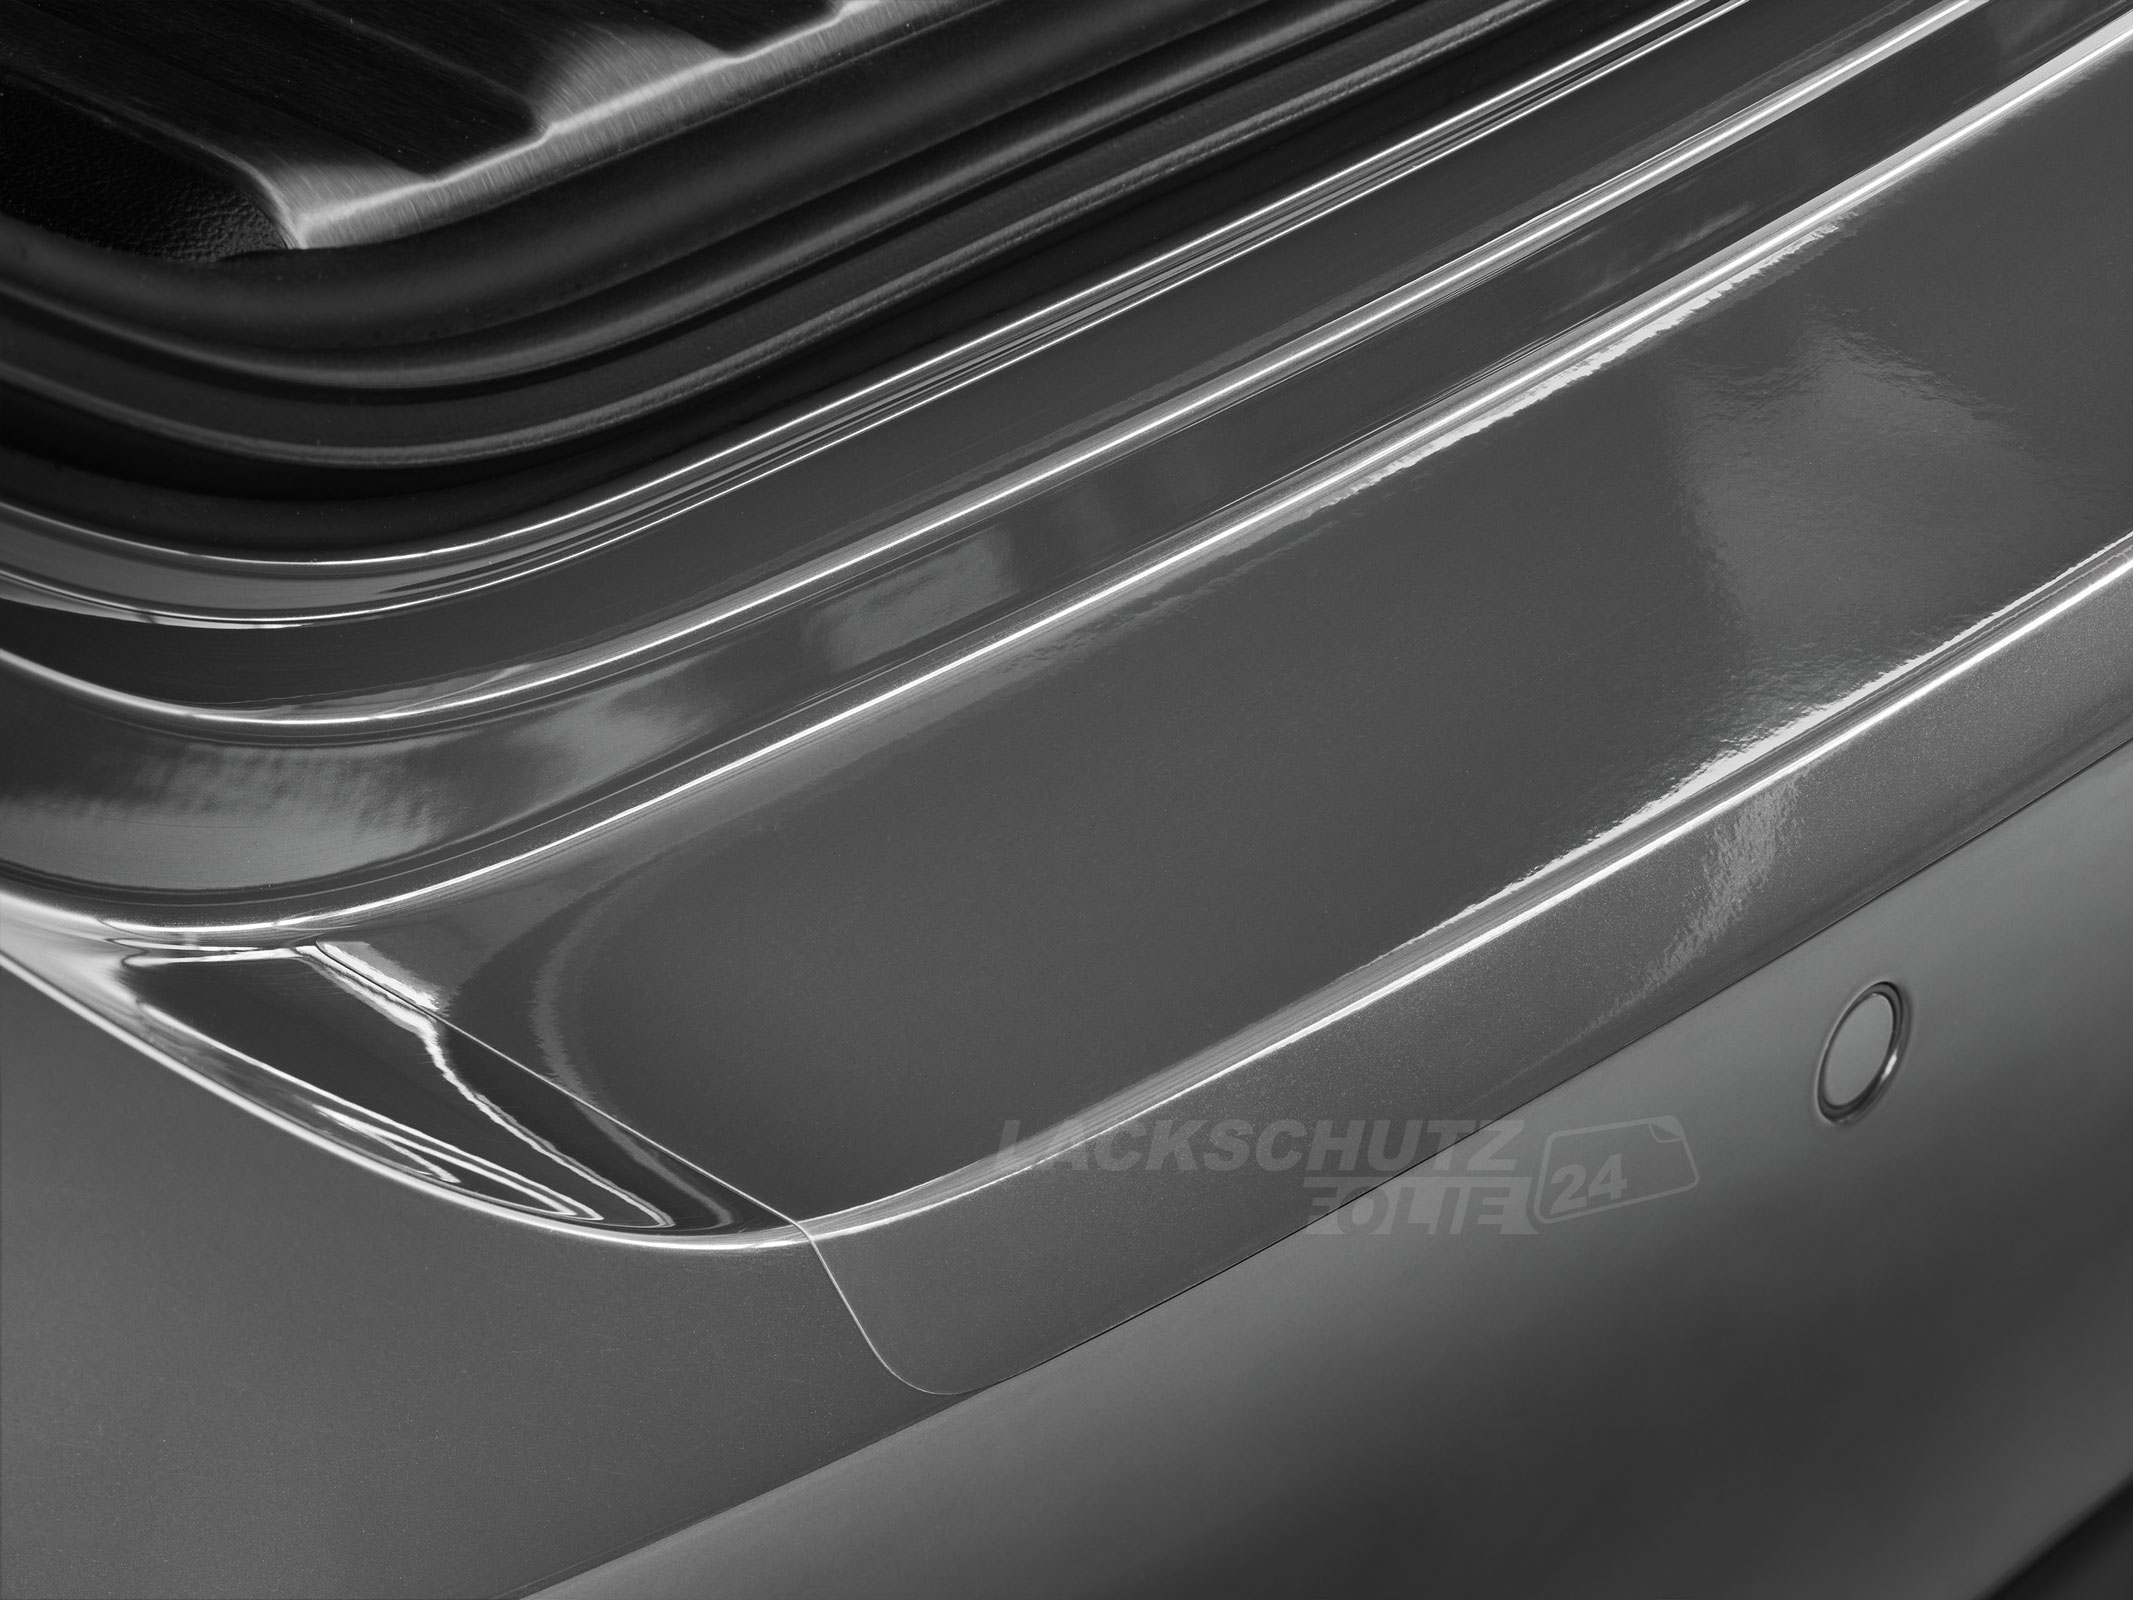 Ladekantenschutzfolie - Transparent Glatt Hochglänzend für Toyota GT86 ab BJ 2012